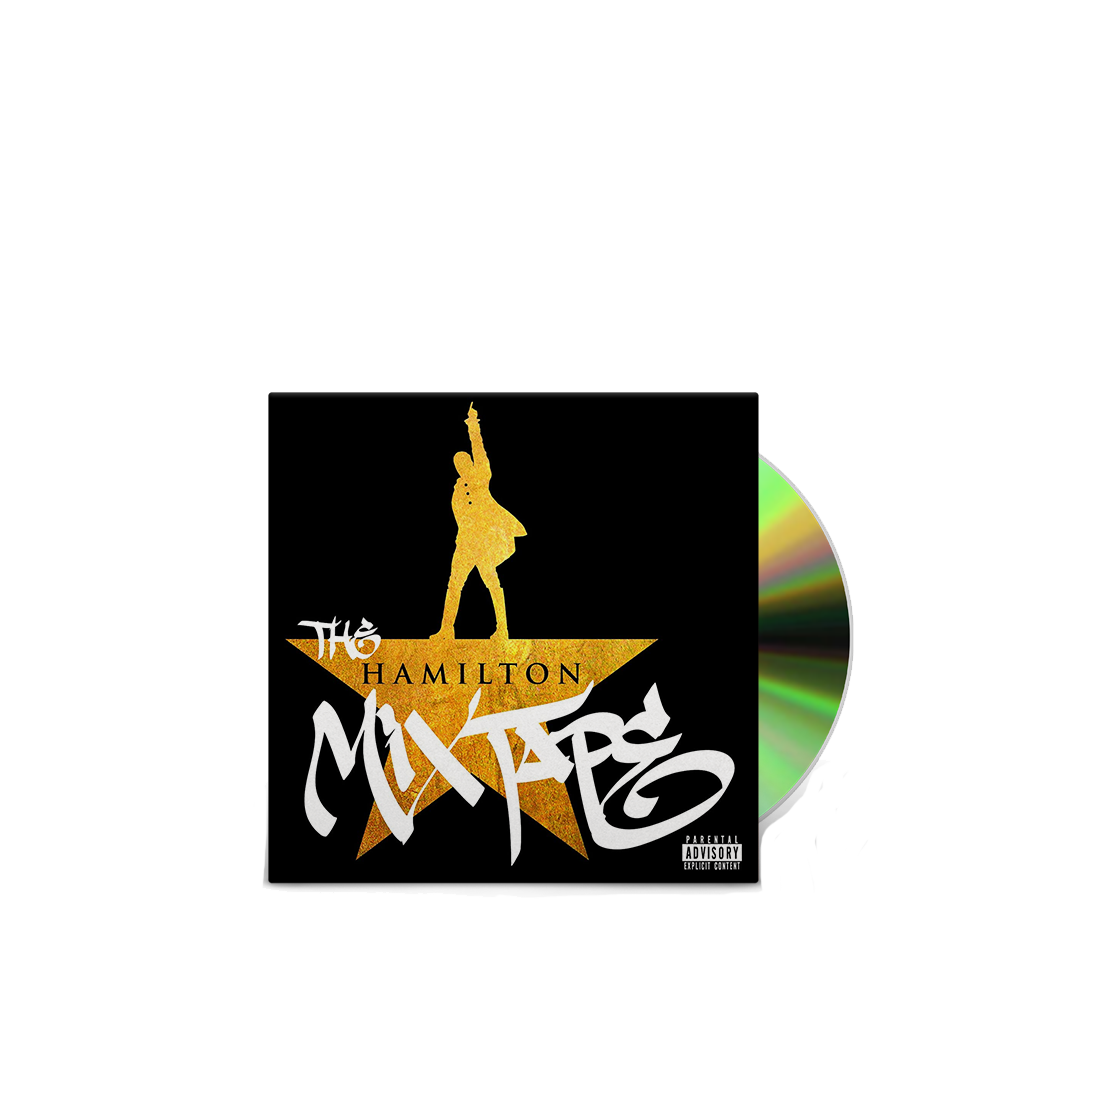 The Hamilton Mixtape: CD